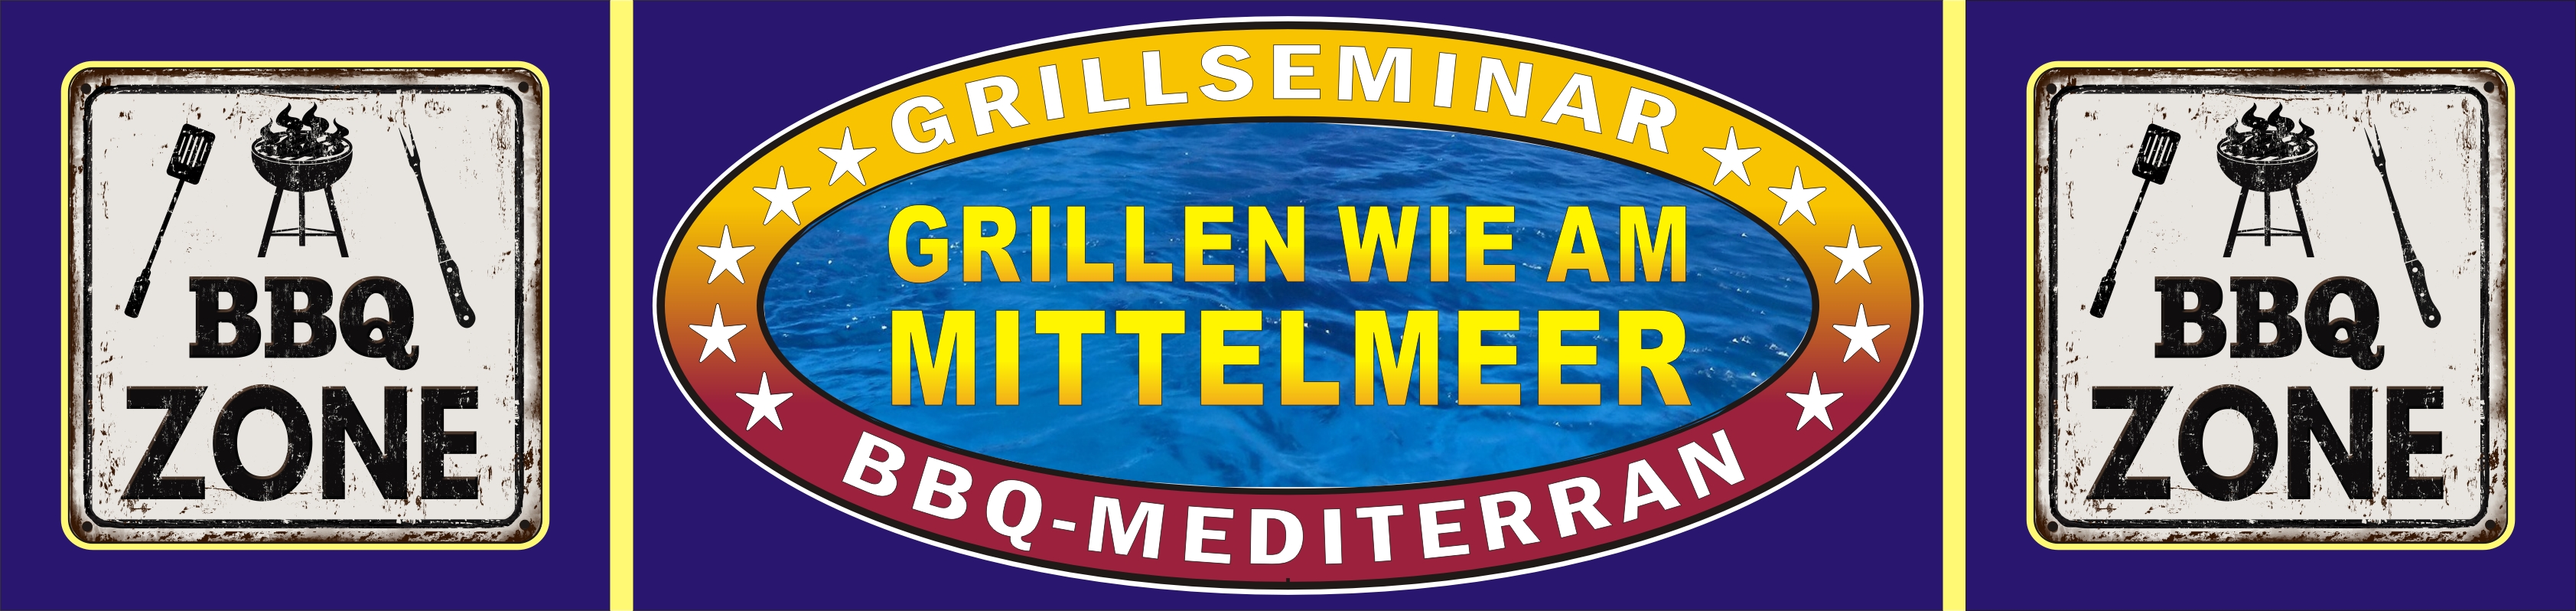 Der Grillkurs --- BBQ-Mediterran, Grillen wie am Mittelmeer --- für Teilnehmer aus Herford, Hiddenhausen, Bad Salzuflen, Bielefeld, Paderborn, Gütersloh,...